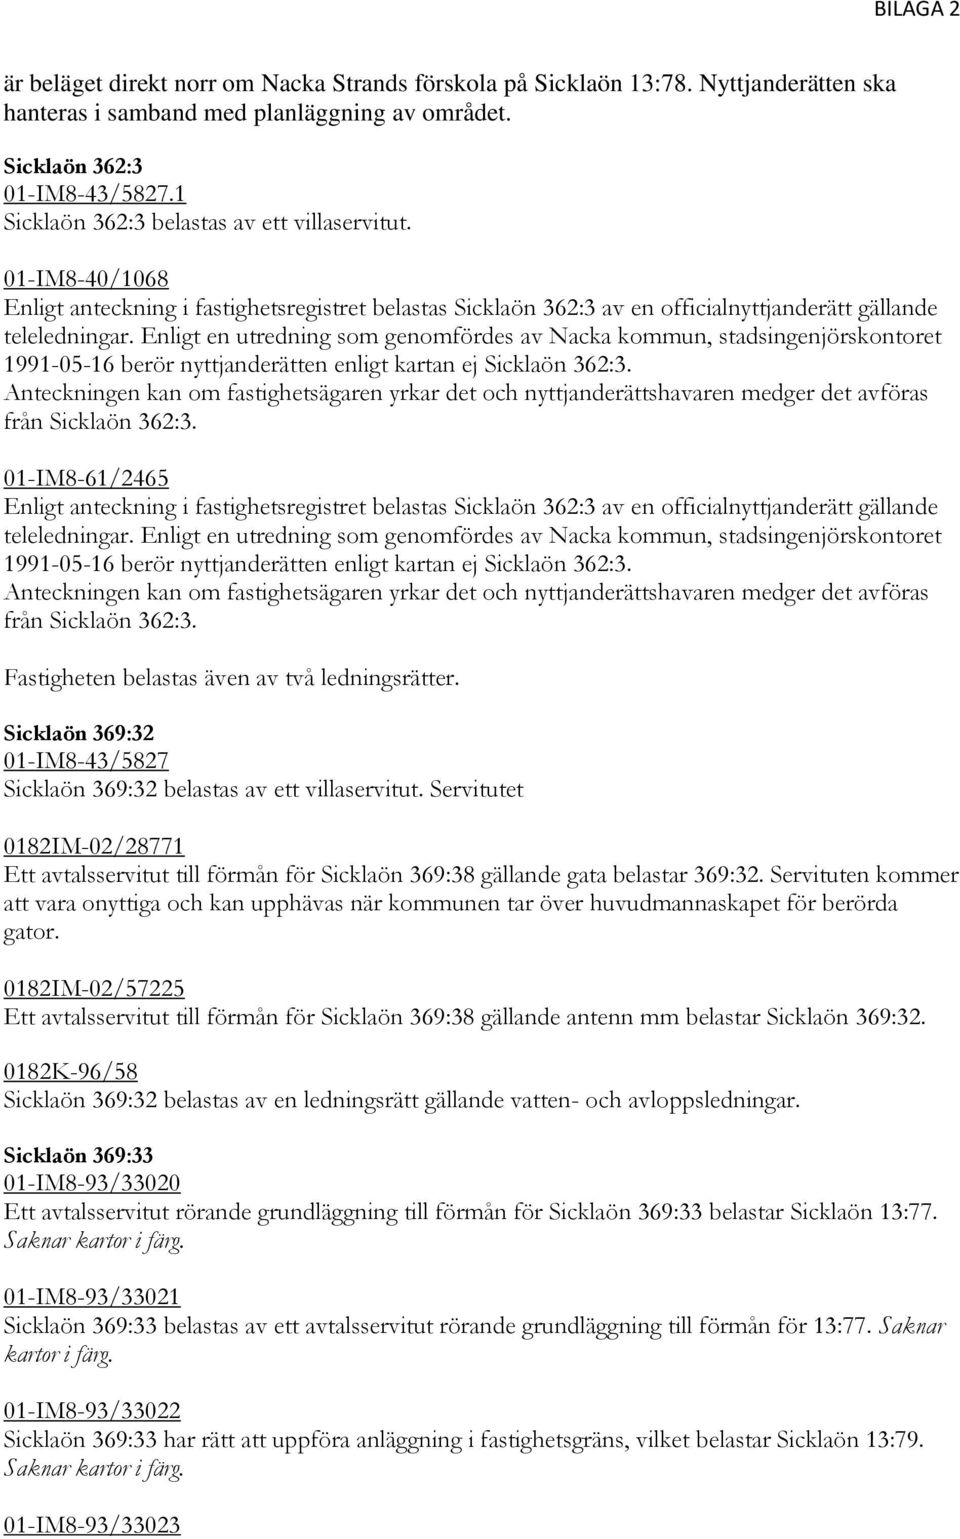 Enligt en utredning som genomfördes av Nacka kommun, stadsingenjörskontoret 1991-05-16 berör nyttjanderätten enligt kartan ej Sicklaön 362:3.